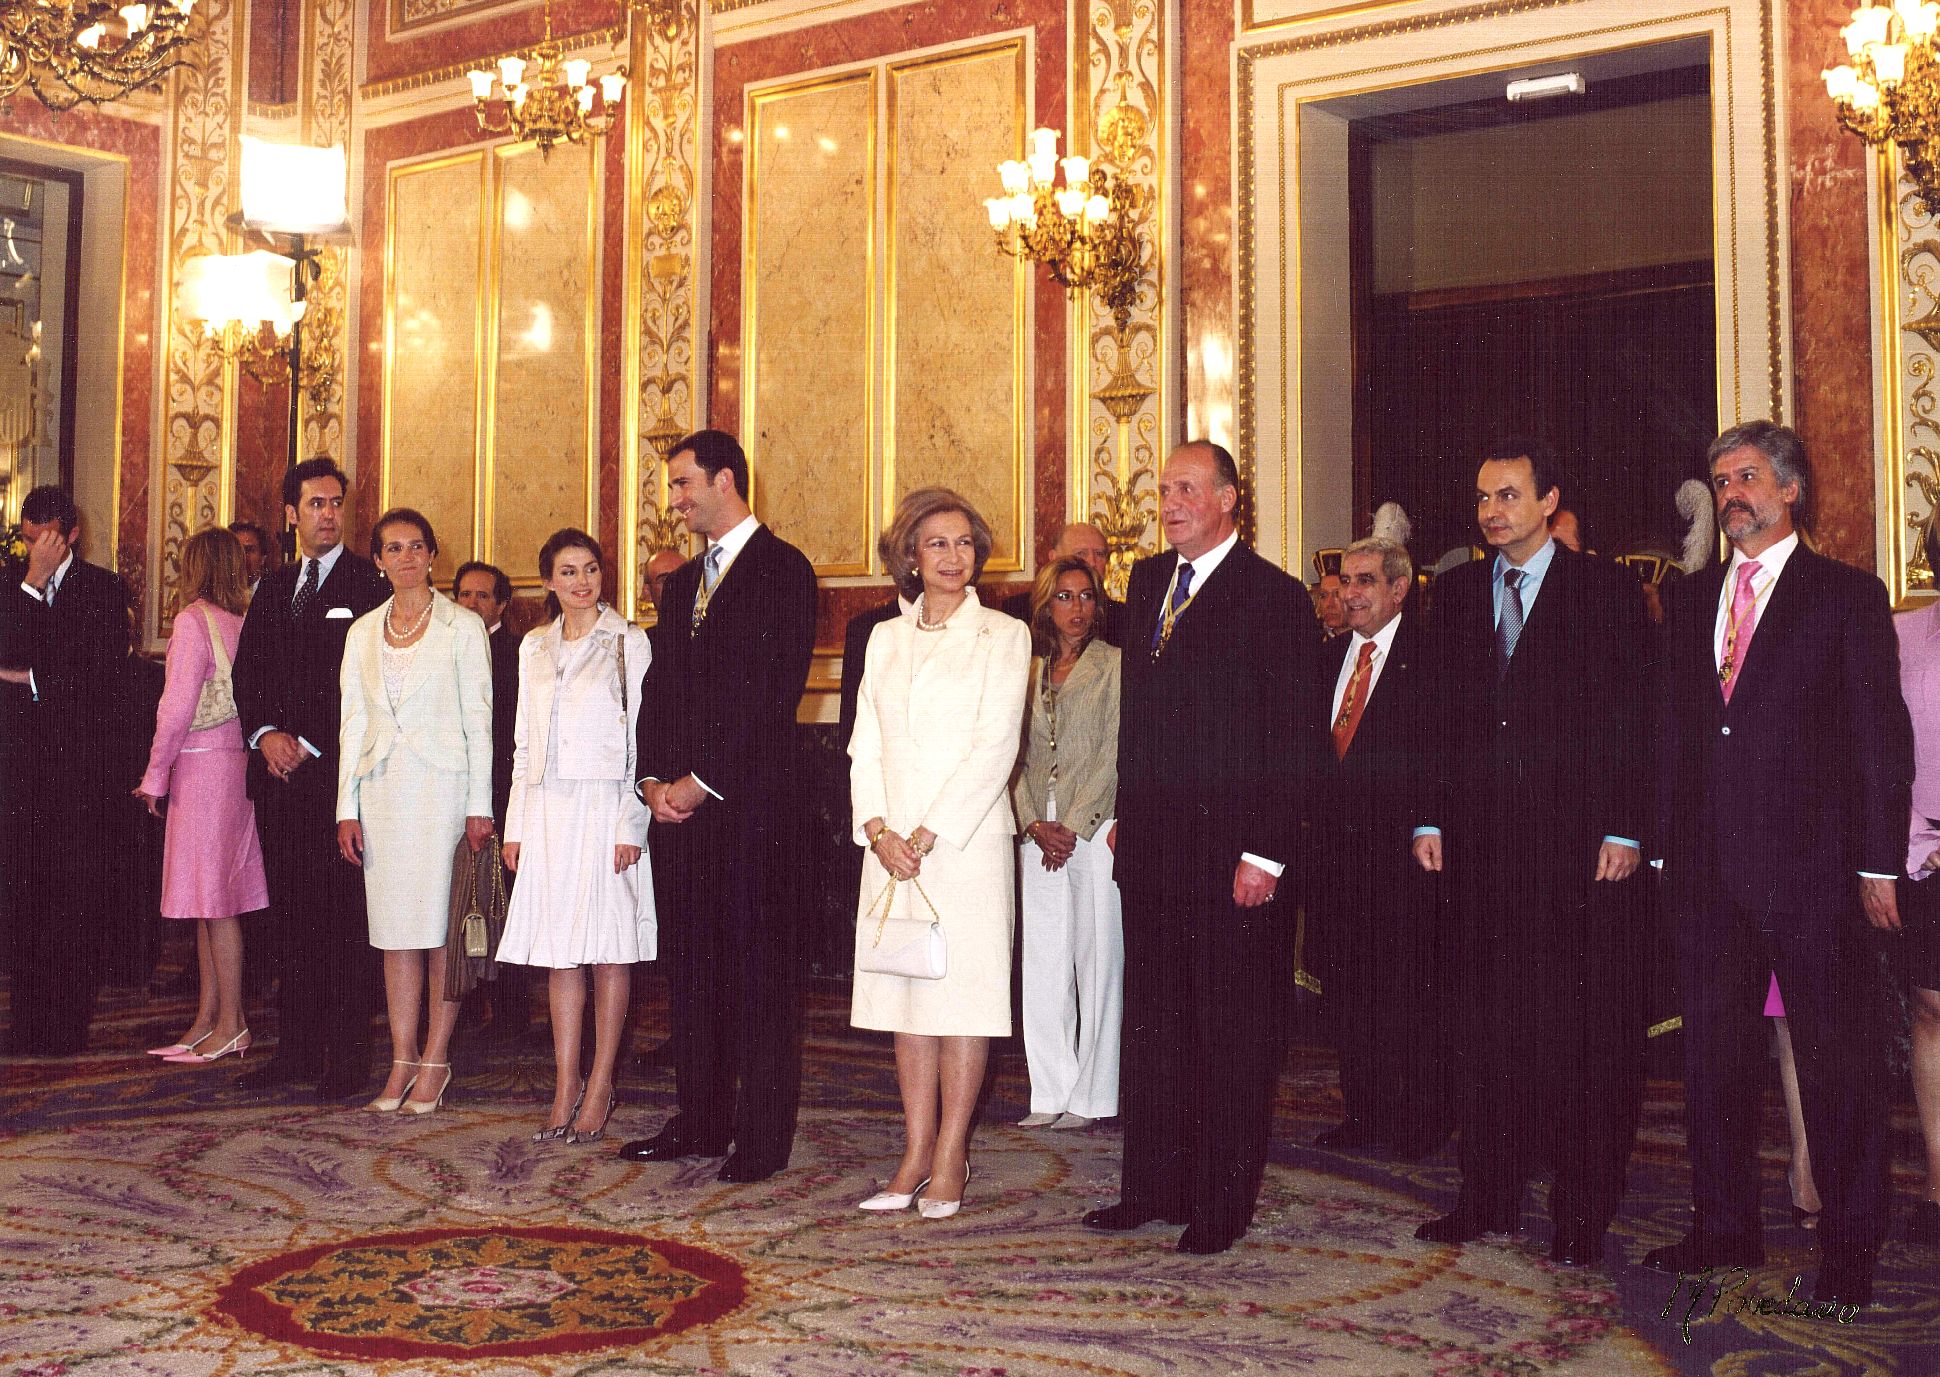 La Familia Real en el Salón de Conferencia saludando a los miembros de ambas Cámaras, con el Presidente del Gobierno D. Jose Luis Rodríguez Zapatero y el Presidente del Congreso de los Diputados D. Manuel Marín tras la solemne sesión de apertura